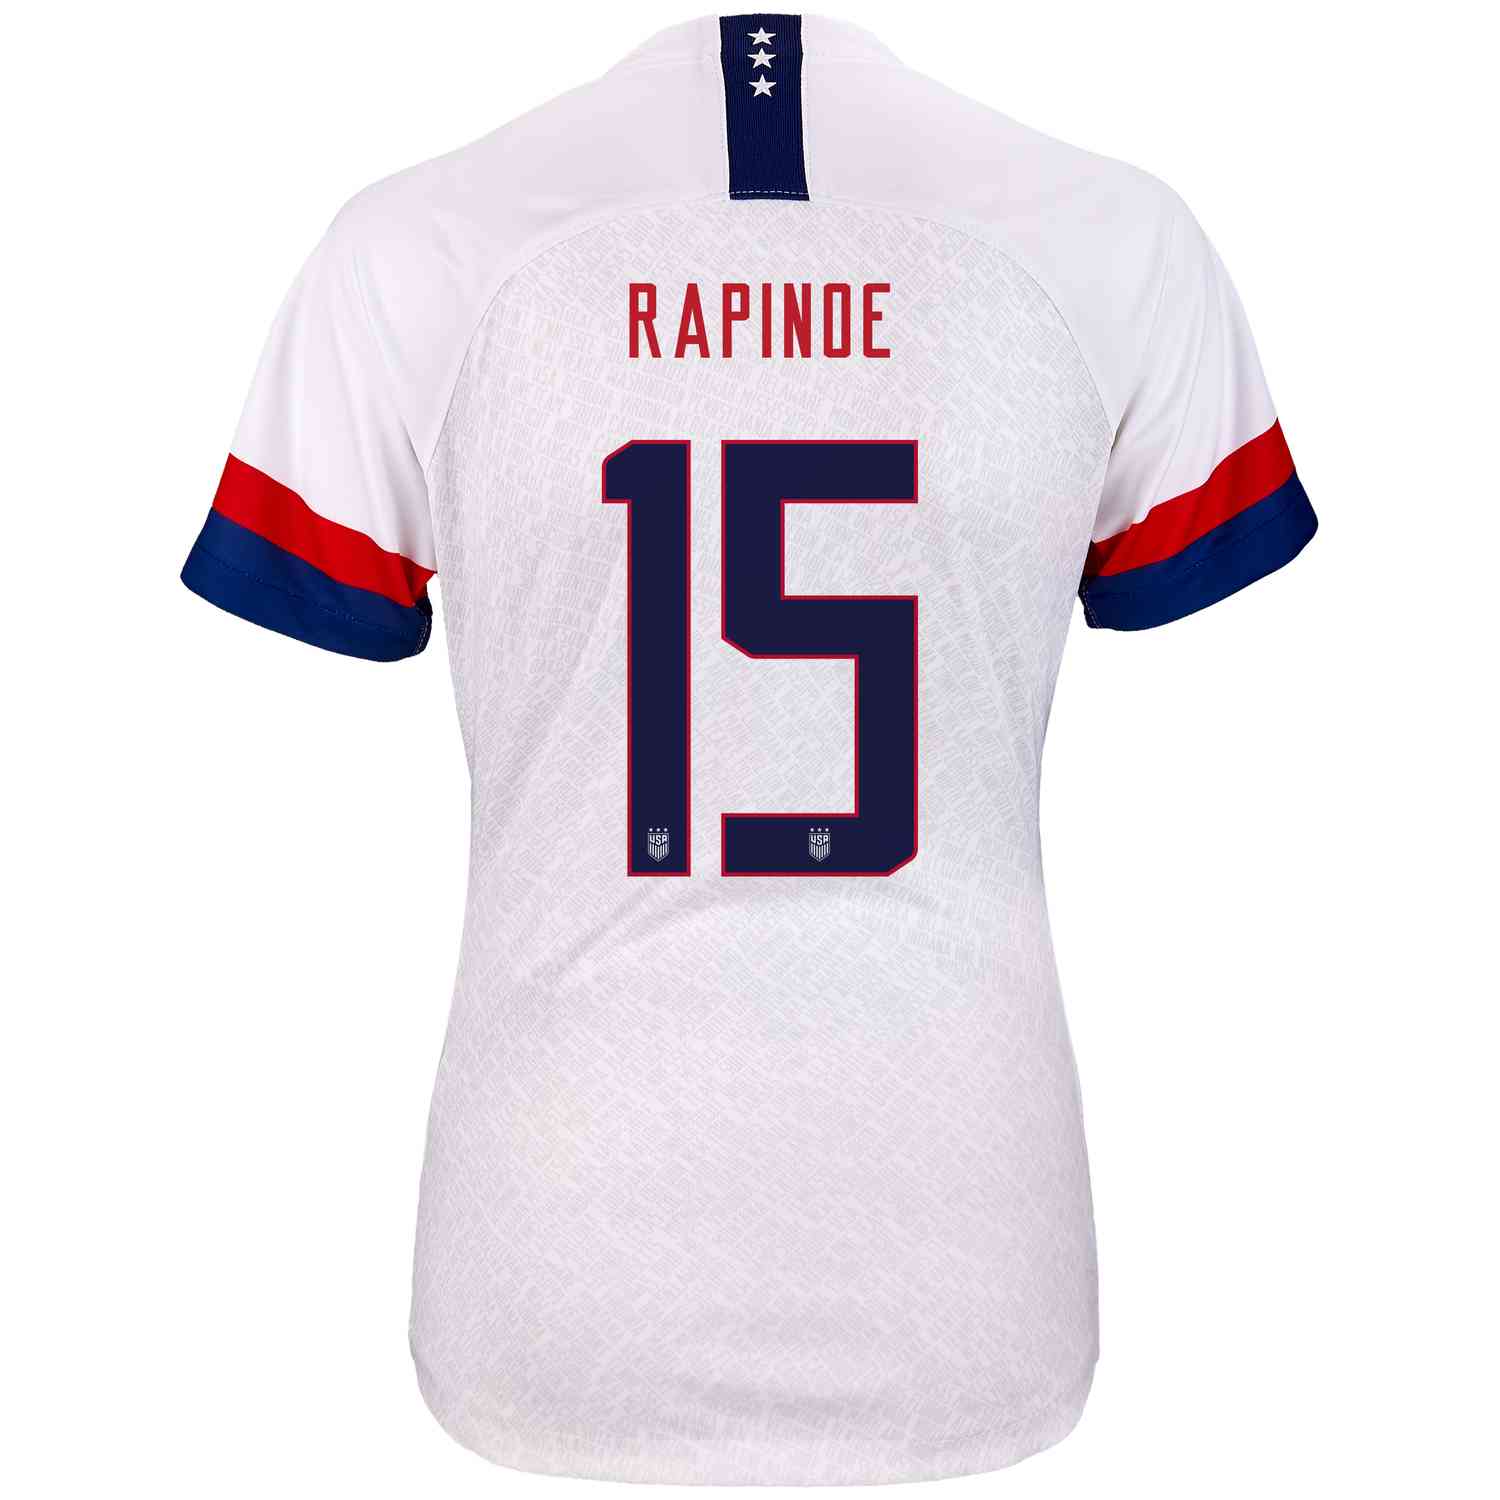 us women's soccer rapinoe jersey